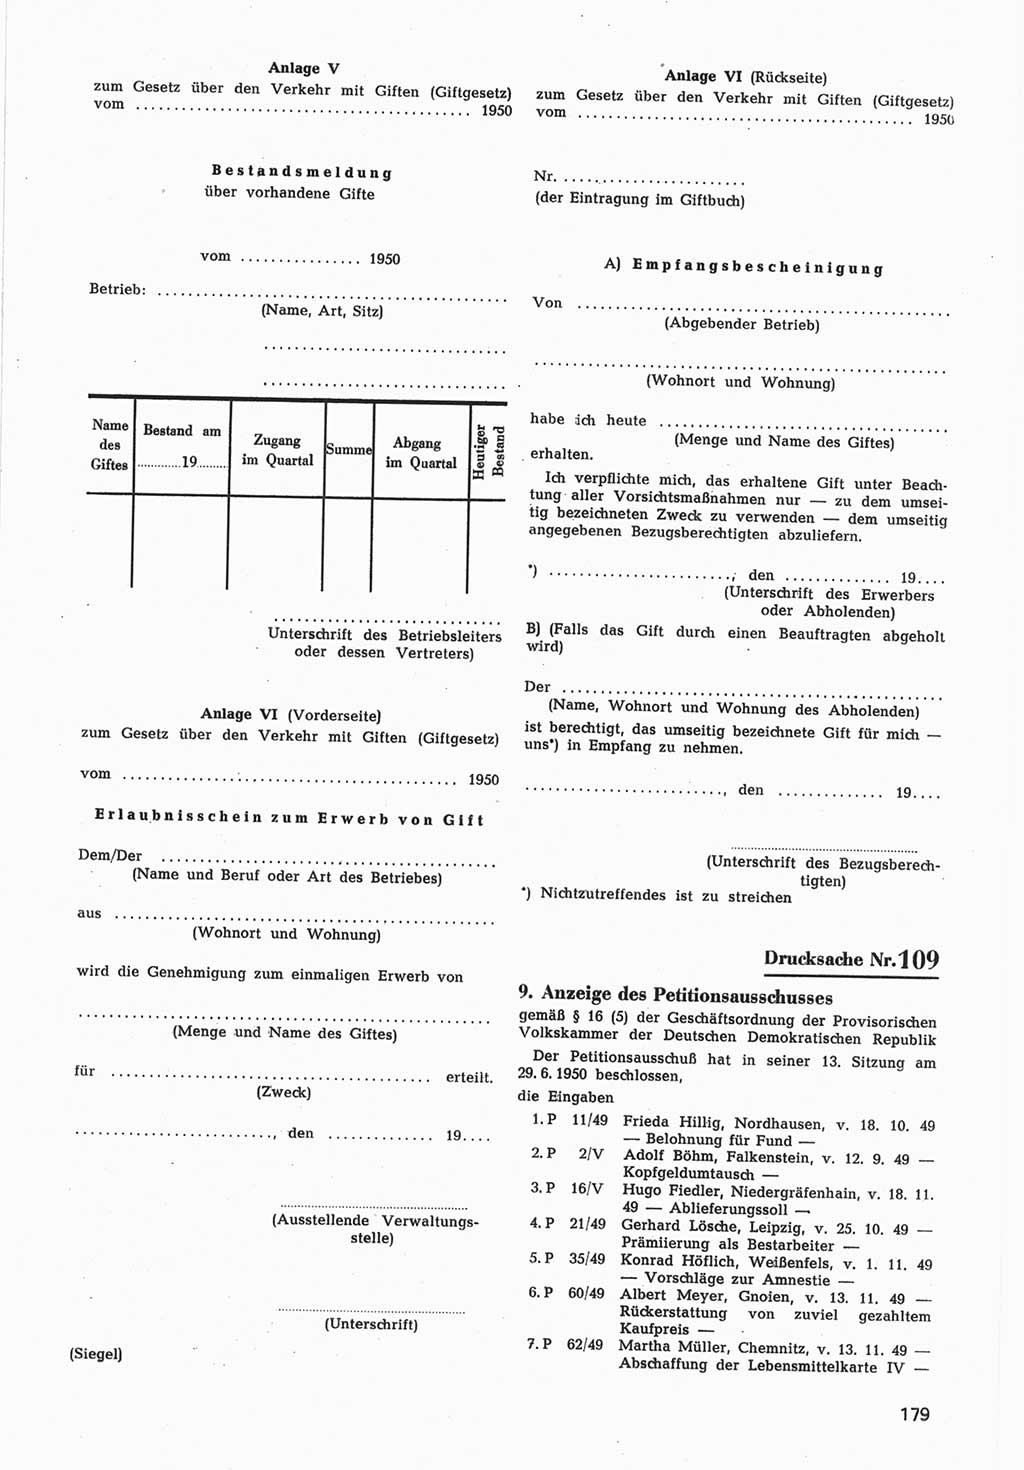 Provisorische Volkskammer (VK) der Deutschen Demokratischen Republik (DDR) 1949-1950, Dokument 781 (Prov. VK DDR 1949-1950, Dok. 781)